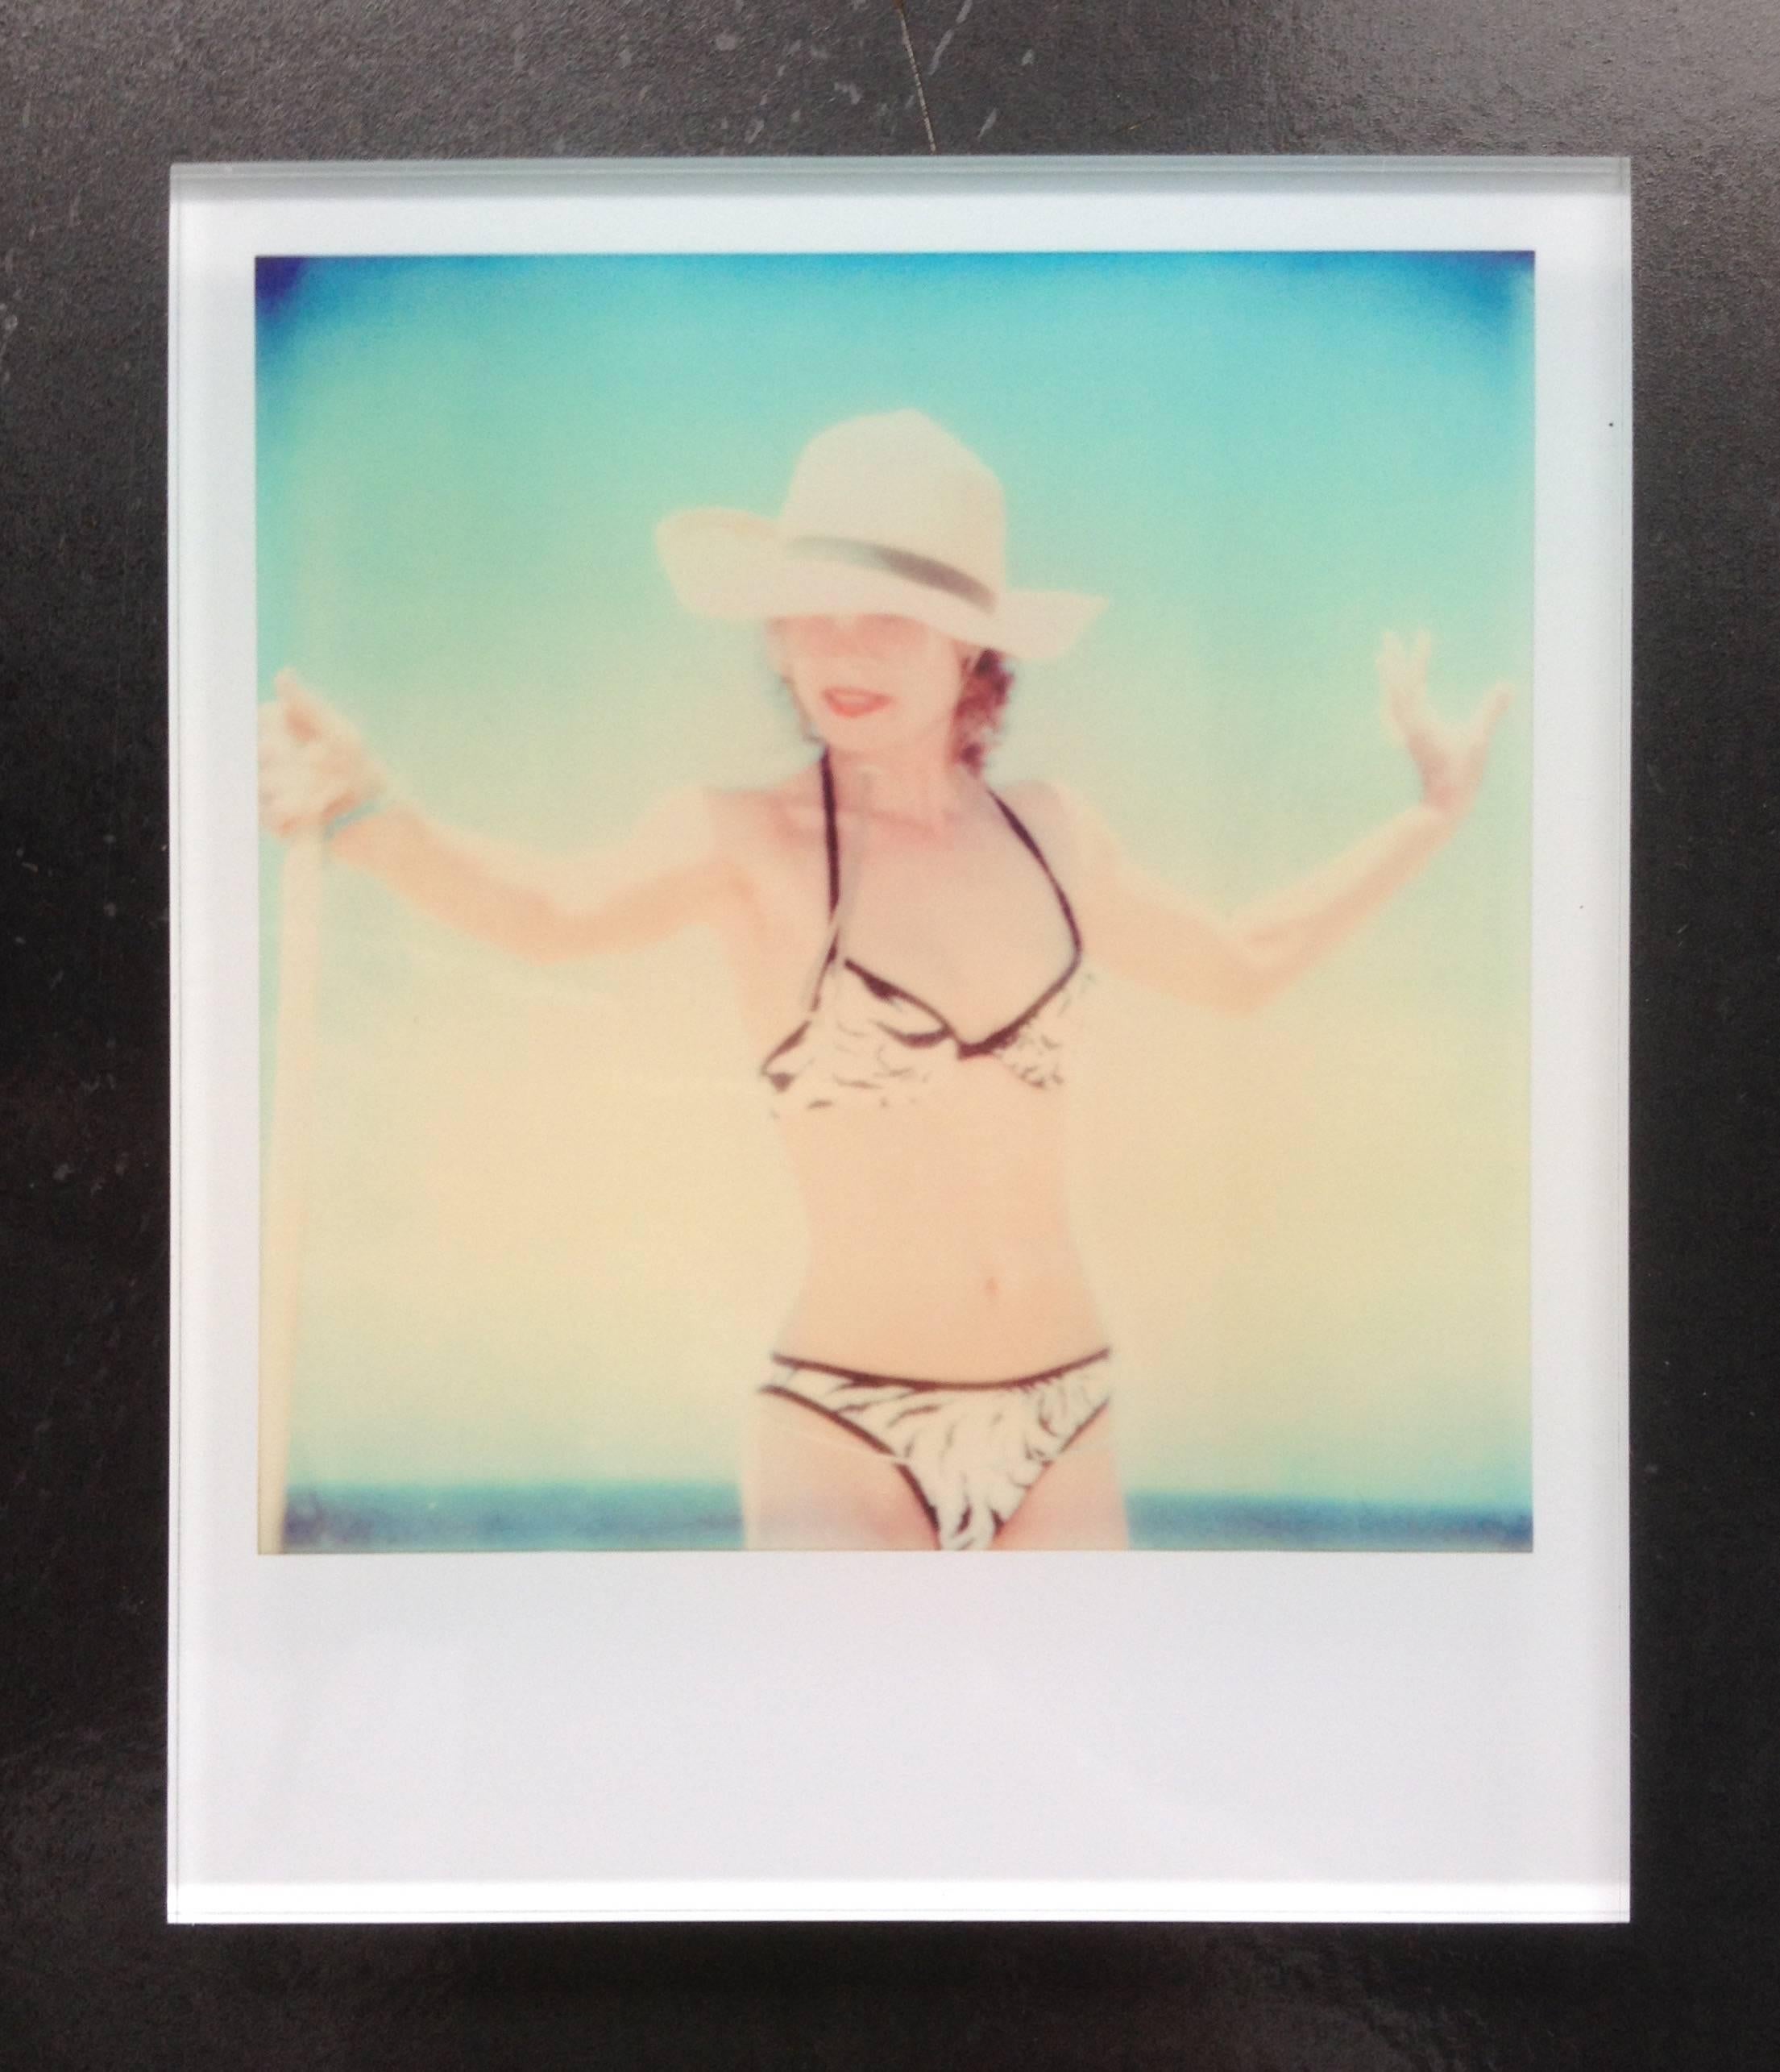 Beachshooting - Zeitgenössisch, figürlich, Polaroid, Fotografie, abgelaufen, 